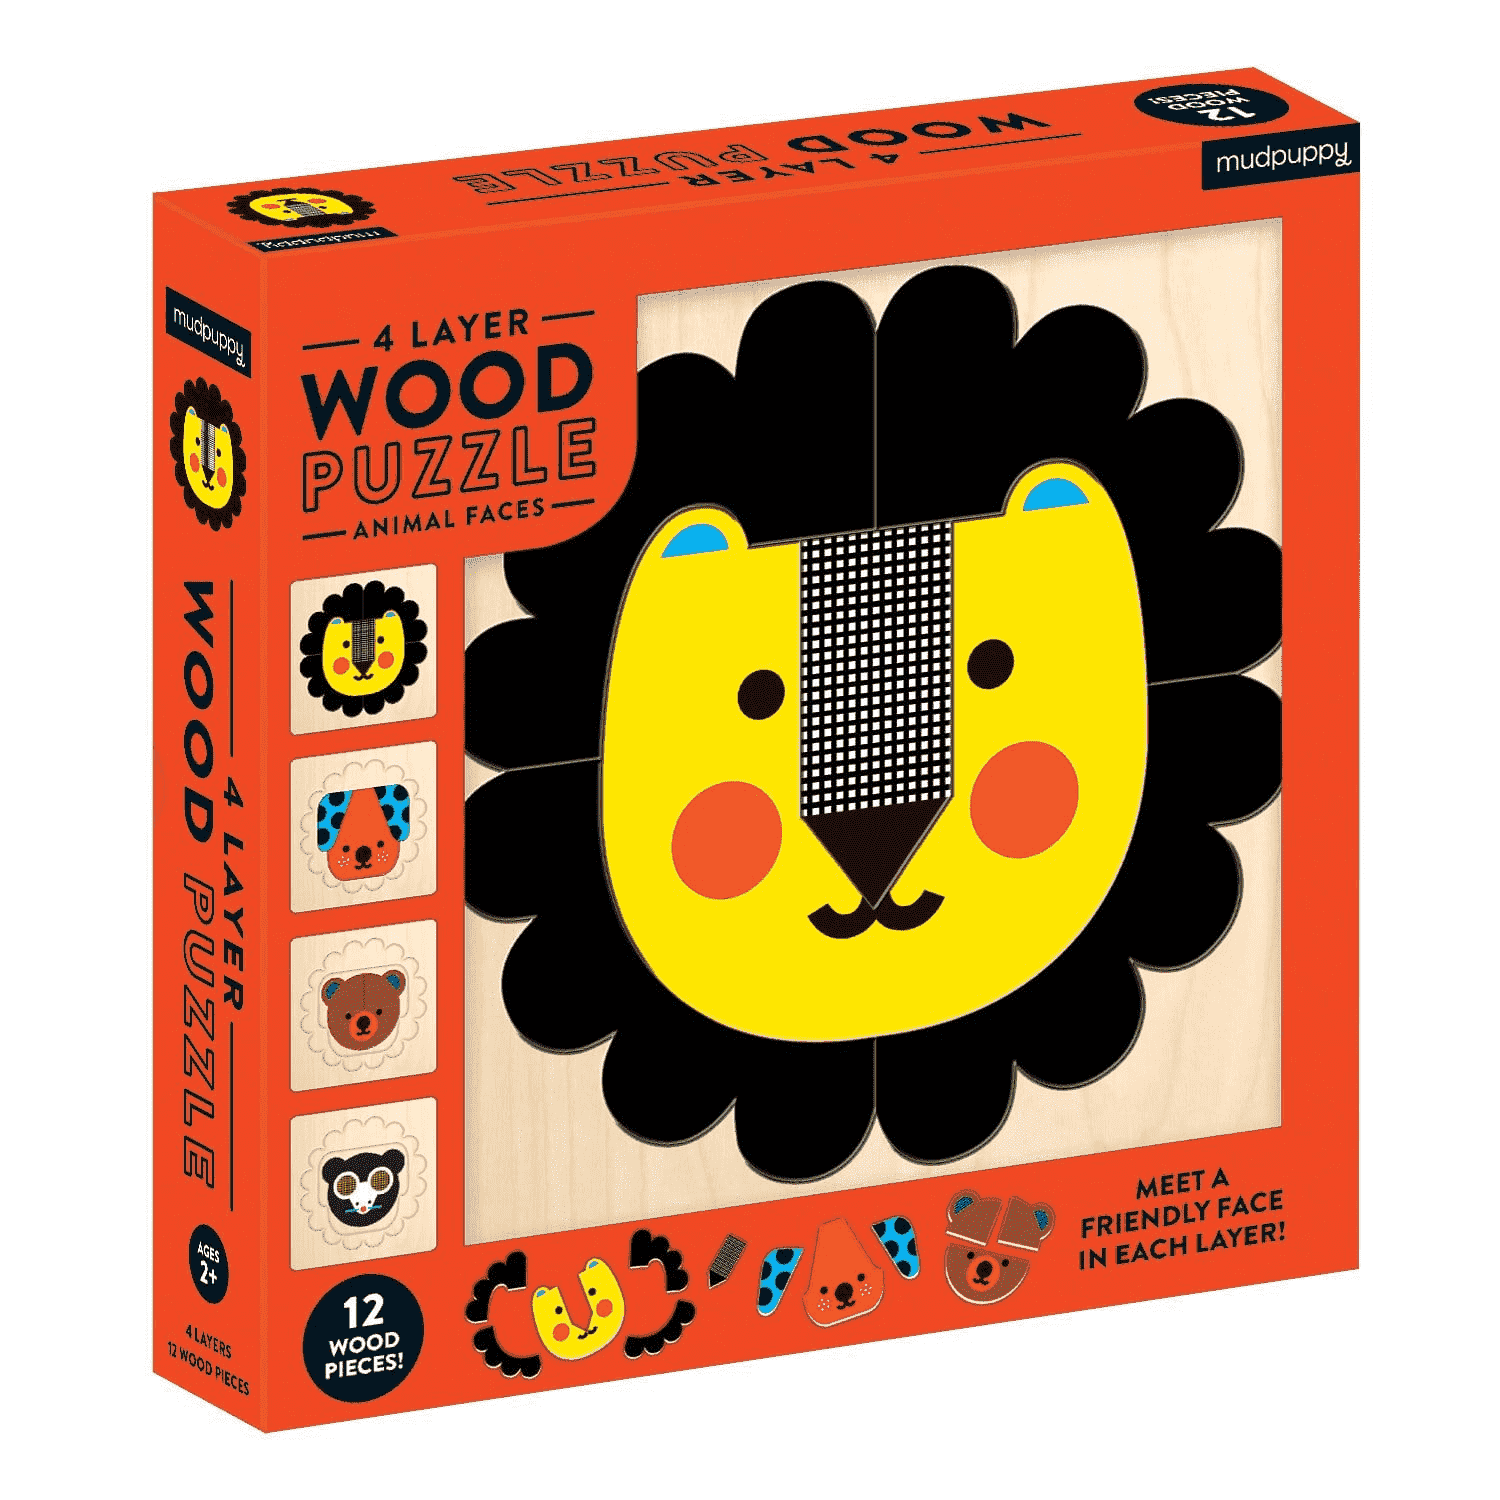 จิ๊กซอว์ไม้ 4 ชั้น ลายหน้าสัตว์แสนน่ารัก Animal Faces 4 Layer Wood Puzzle แบรนด์ Mudpuppy